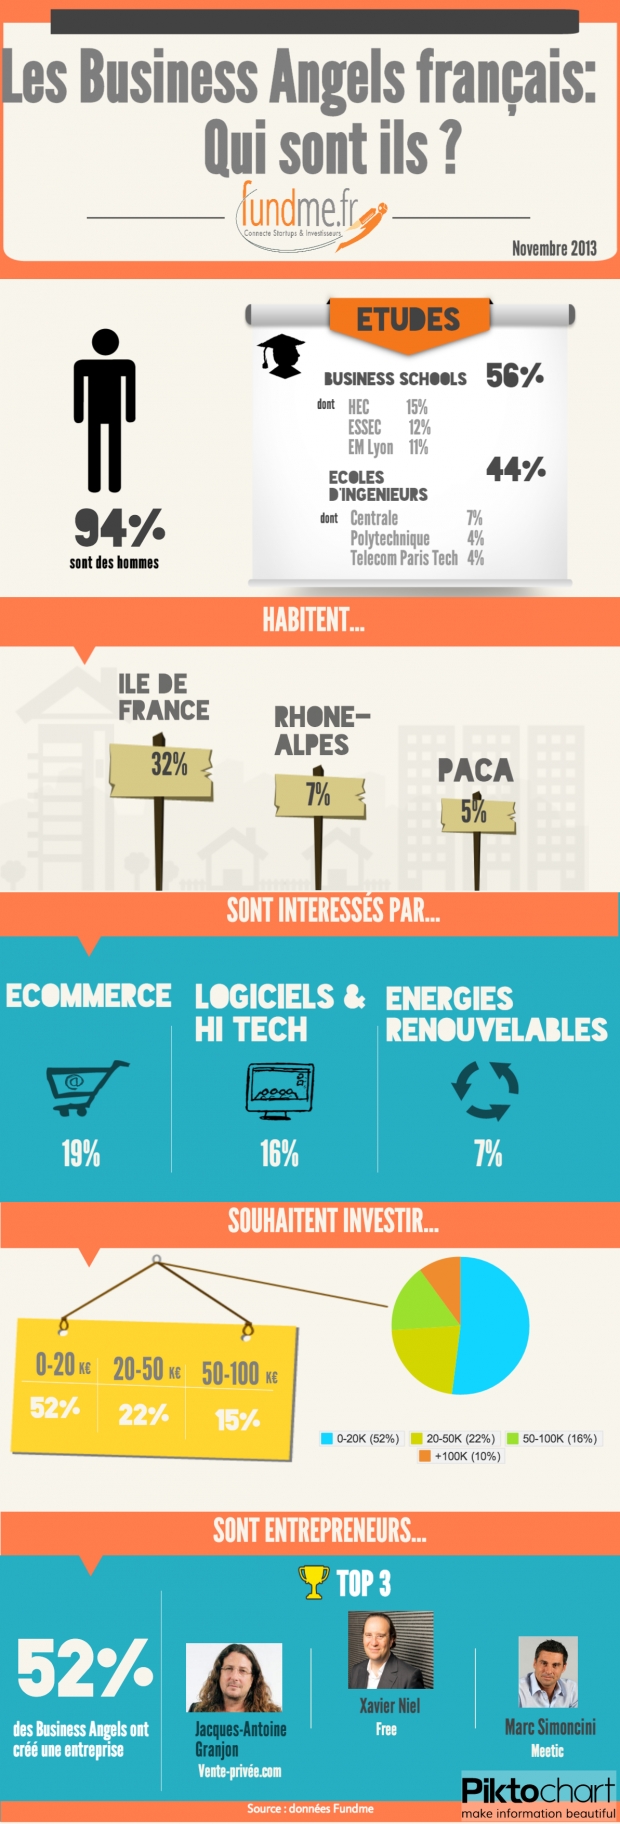 Infographie Fundme - Les Business Angels français